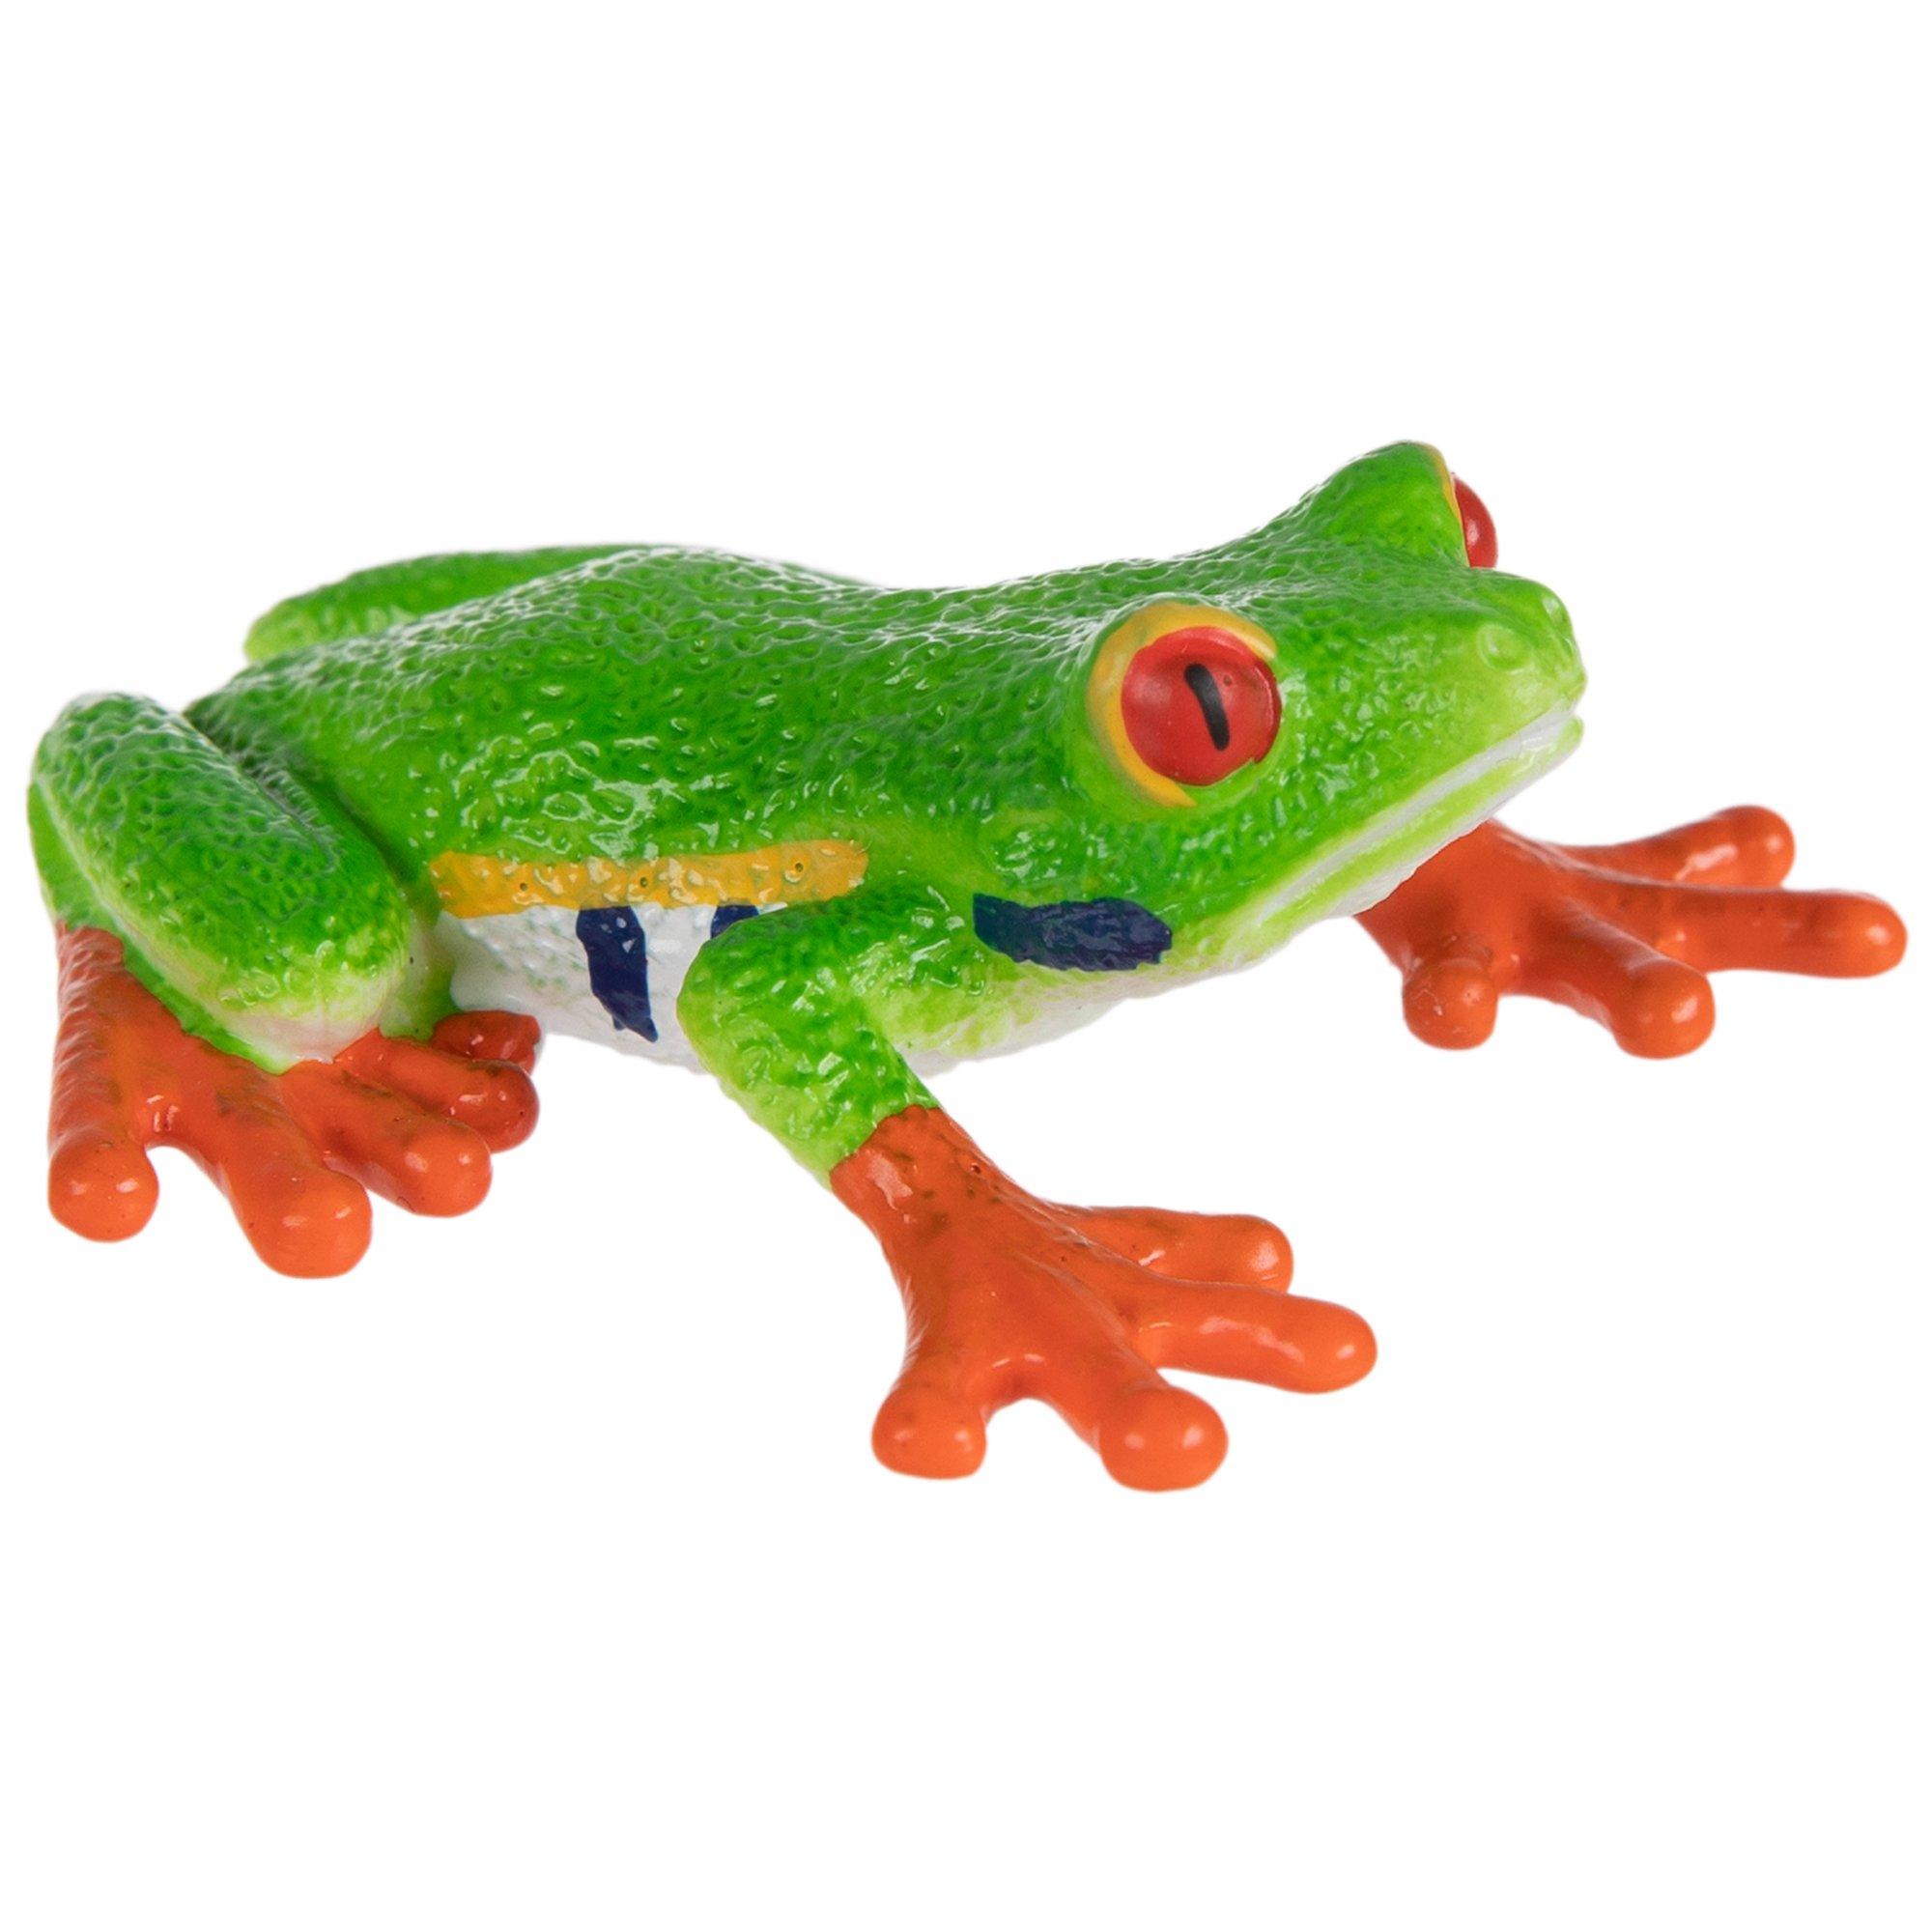 Red Eyed Tree Frog, Hobby Lobby